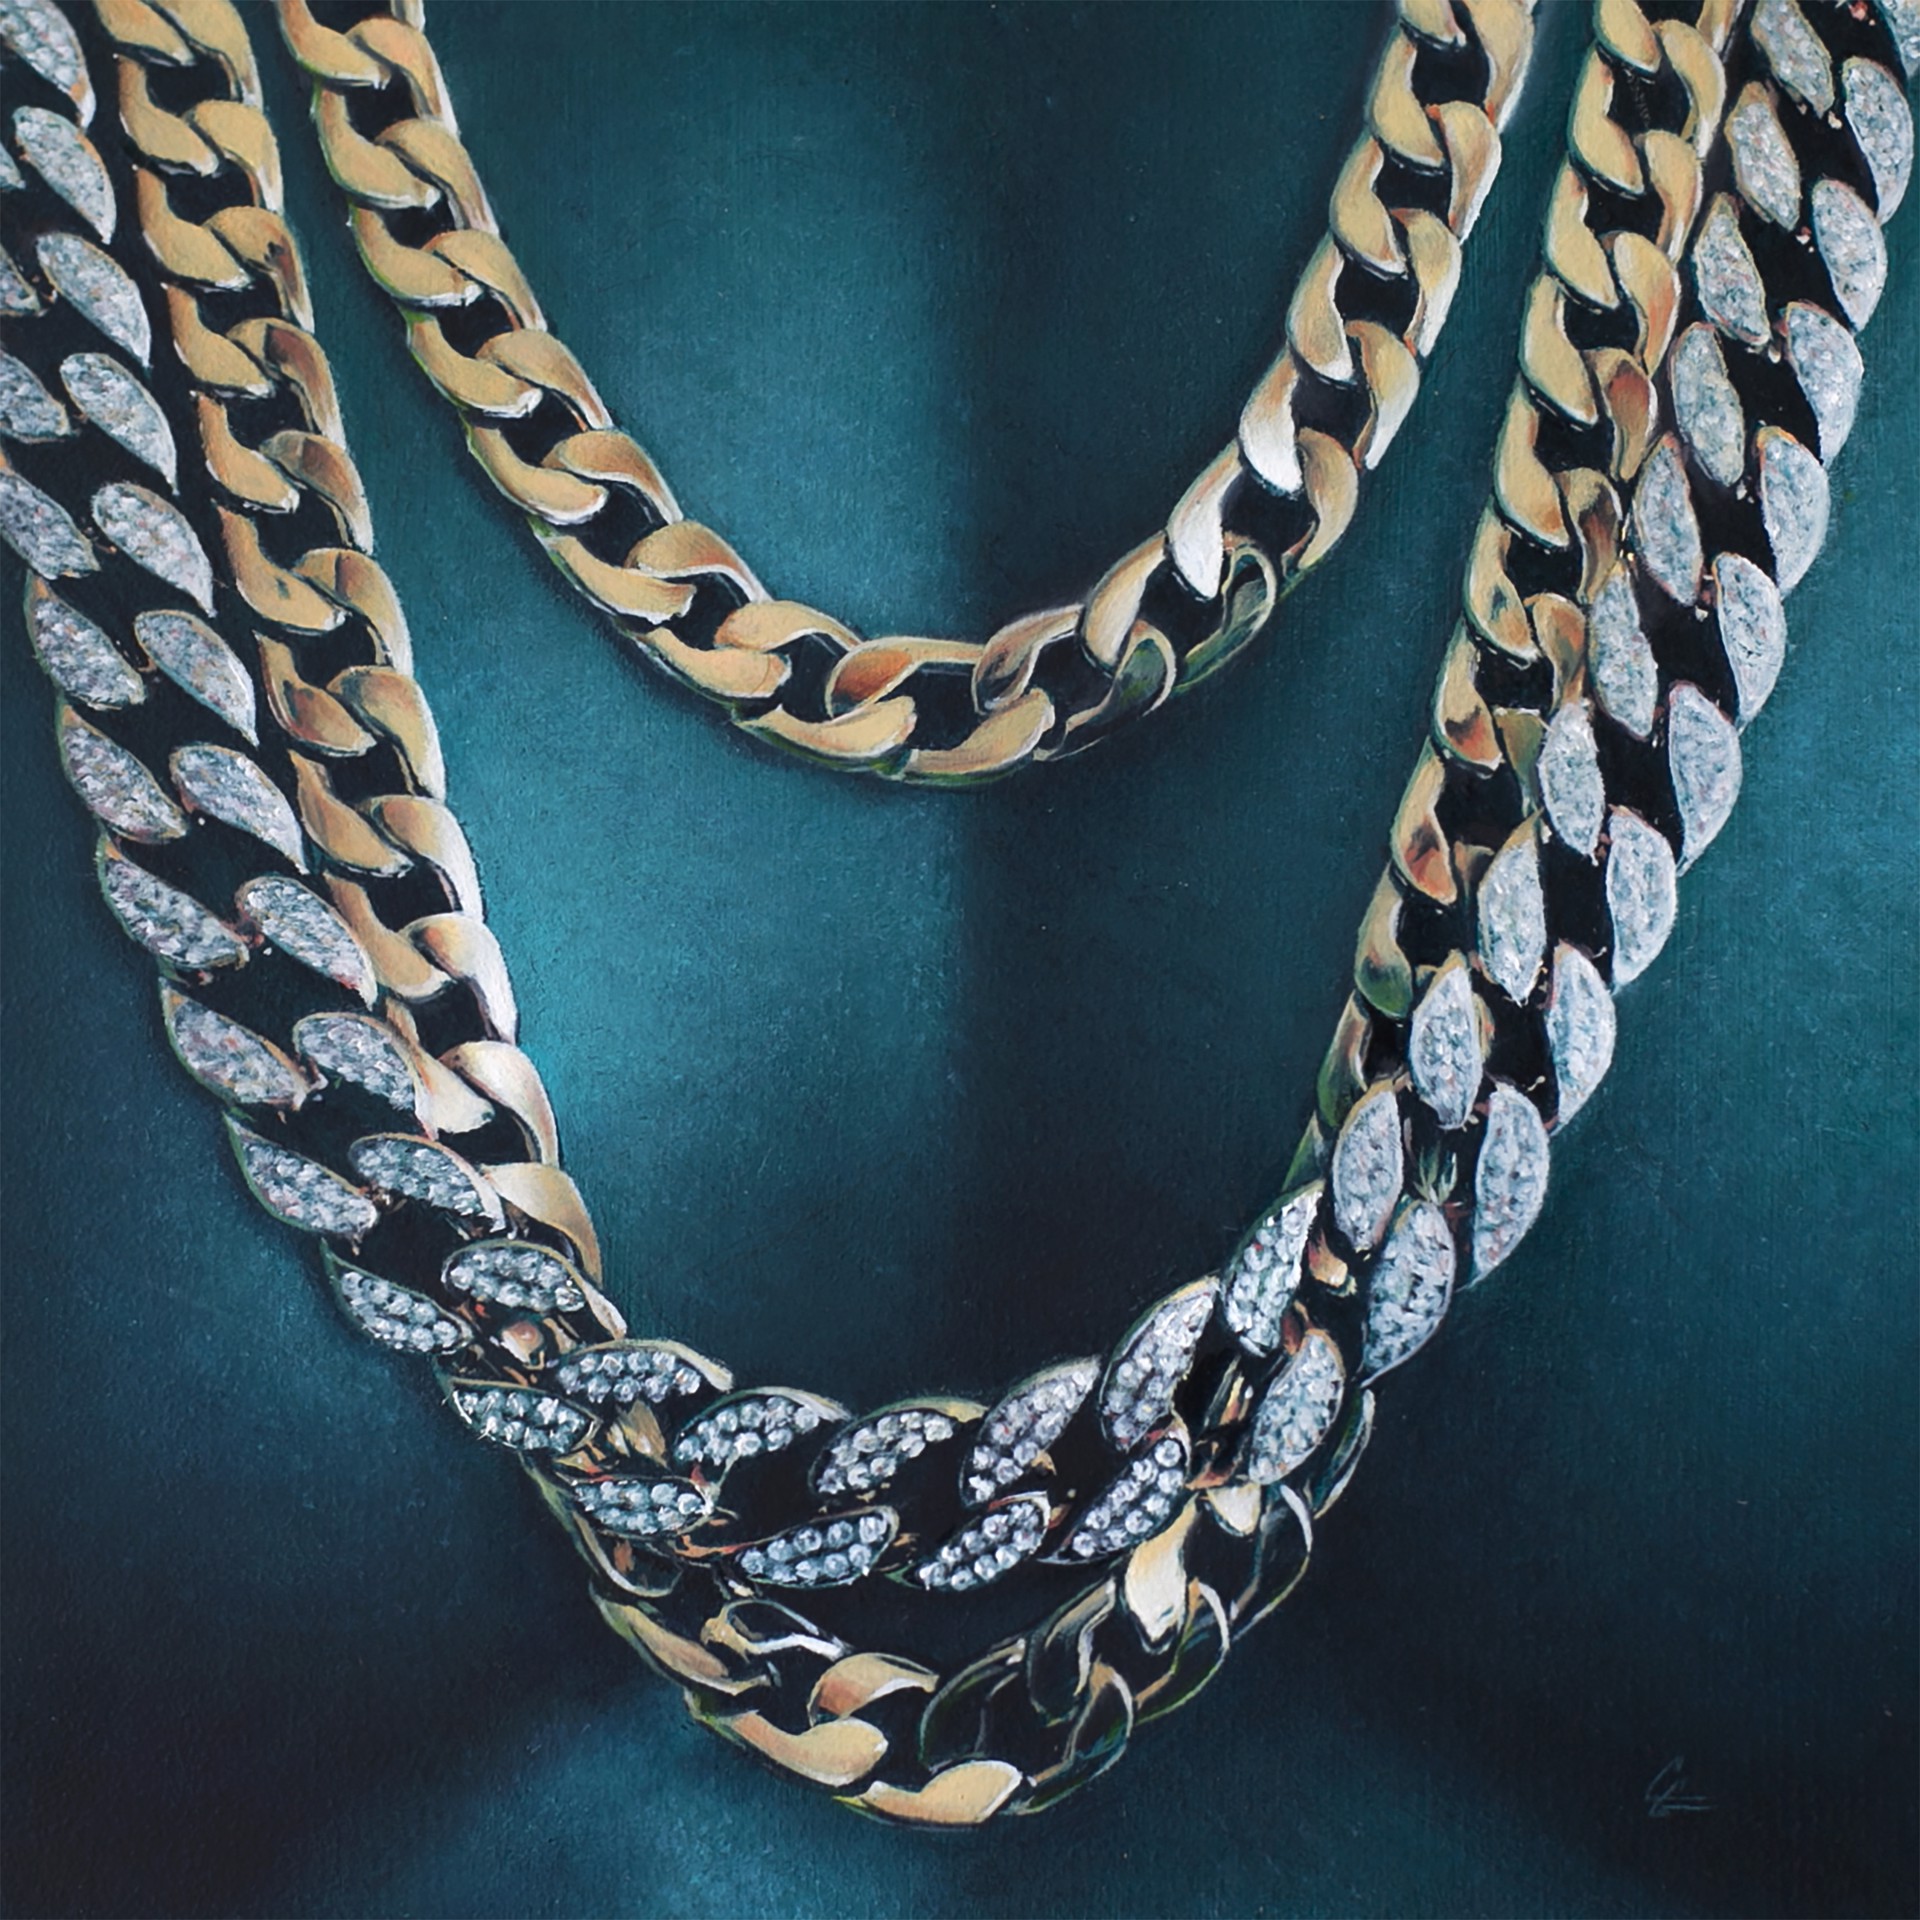 Chainz by Grant Gilsdorf